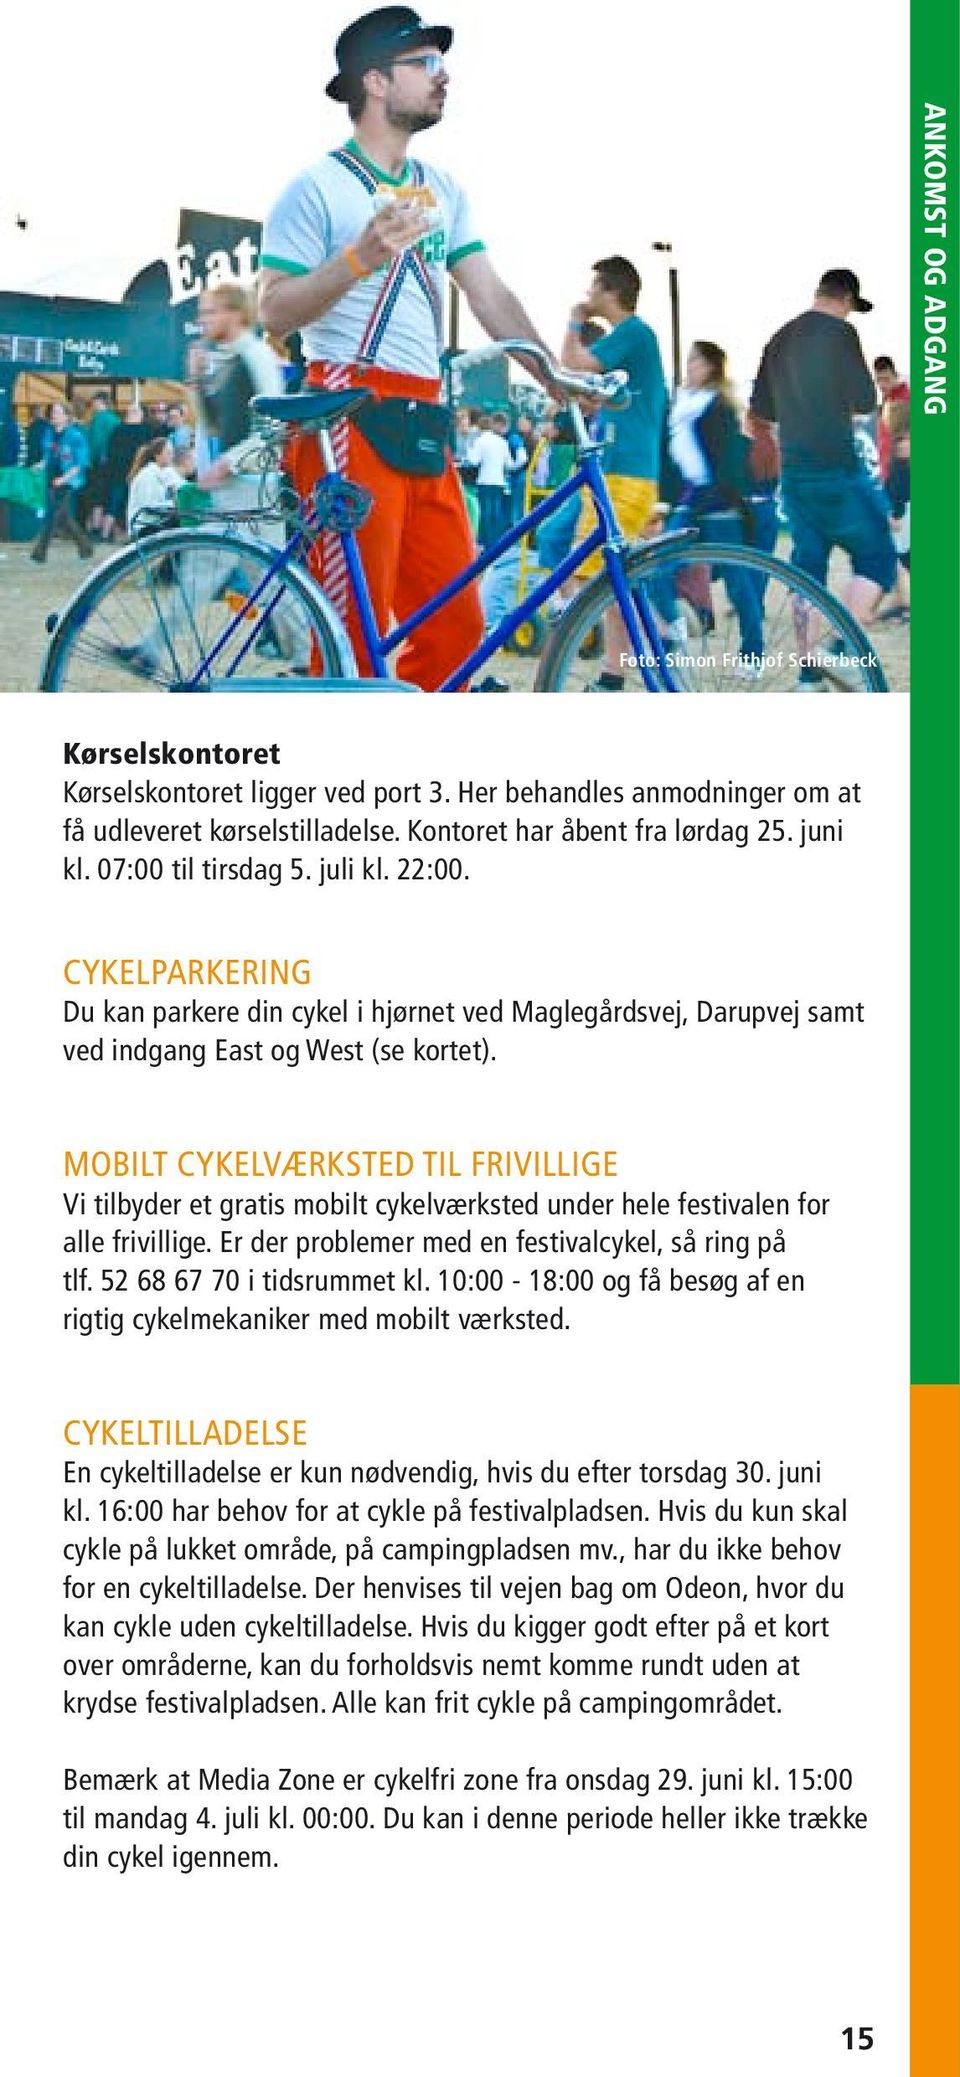 Mobilt cykelværksted til frivillige Vi tilbyder et gratis mobilt cykelværksted under hele festivalen for alle frivillige. Er der problemer med en festivalcykel, så ring på tlf.